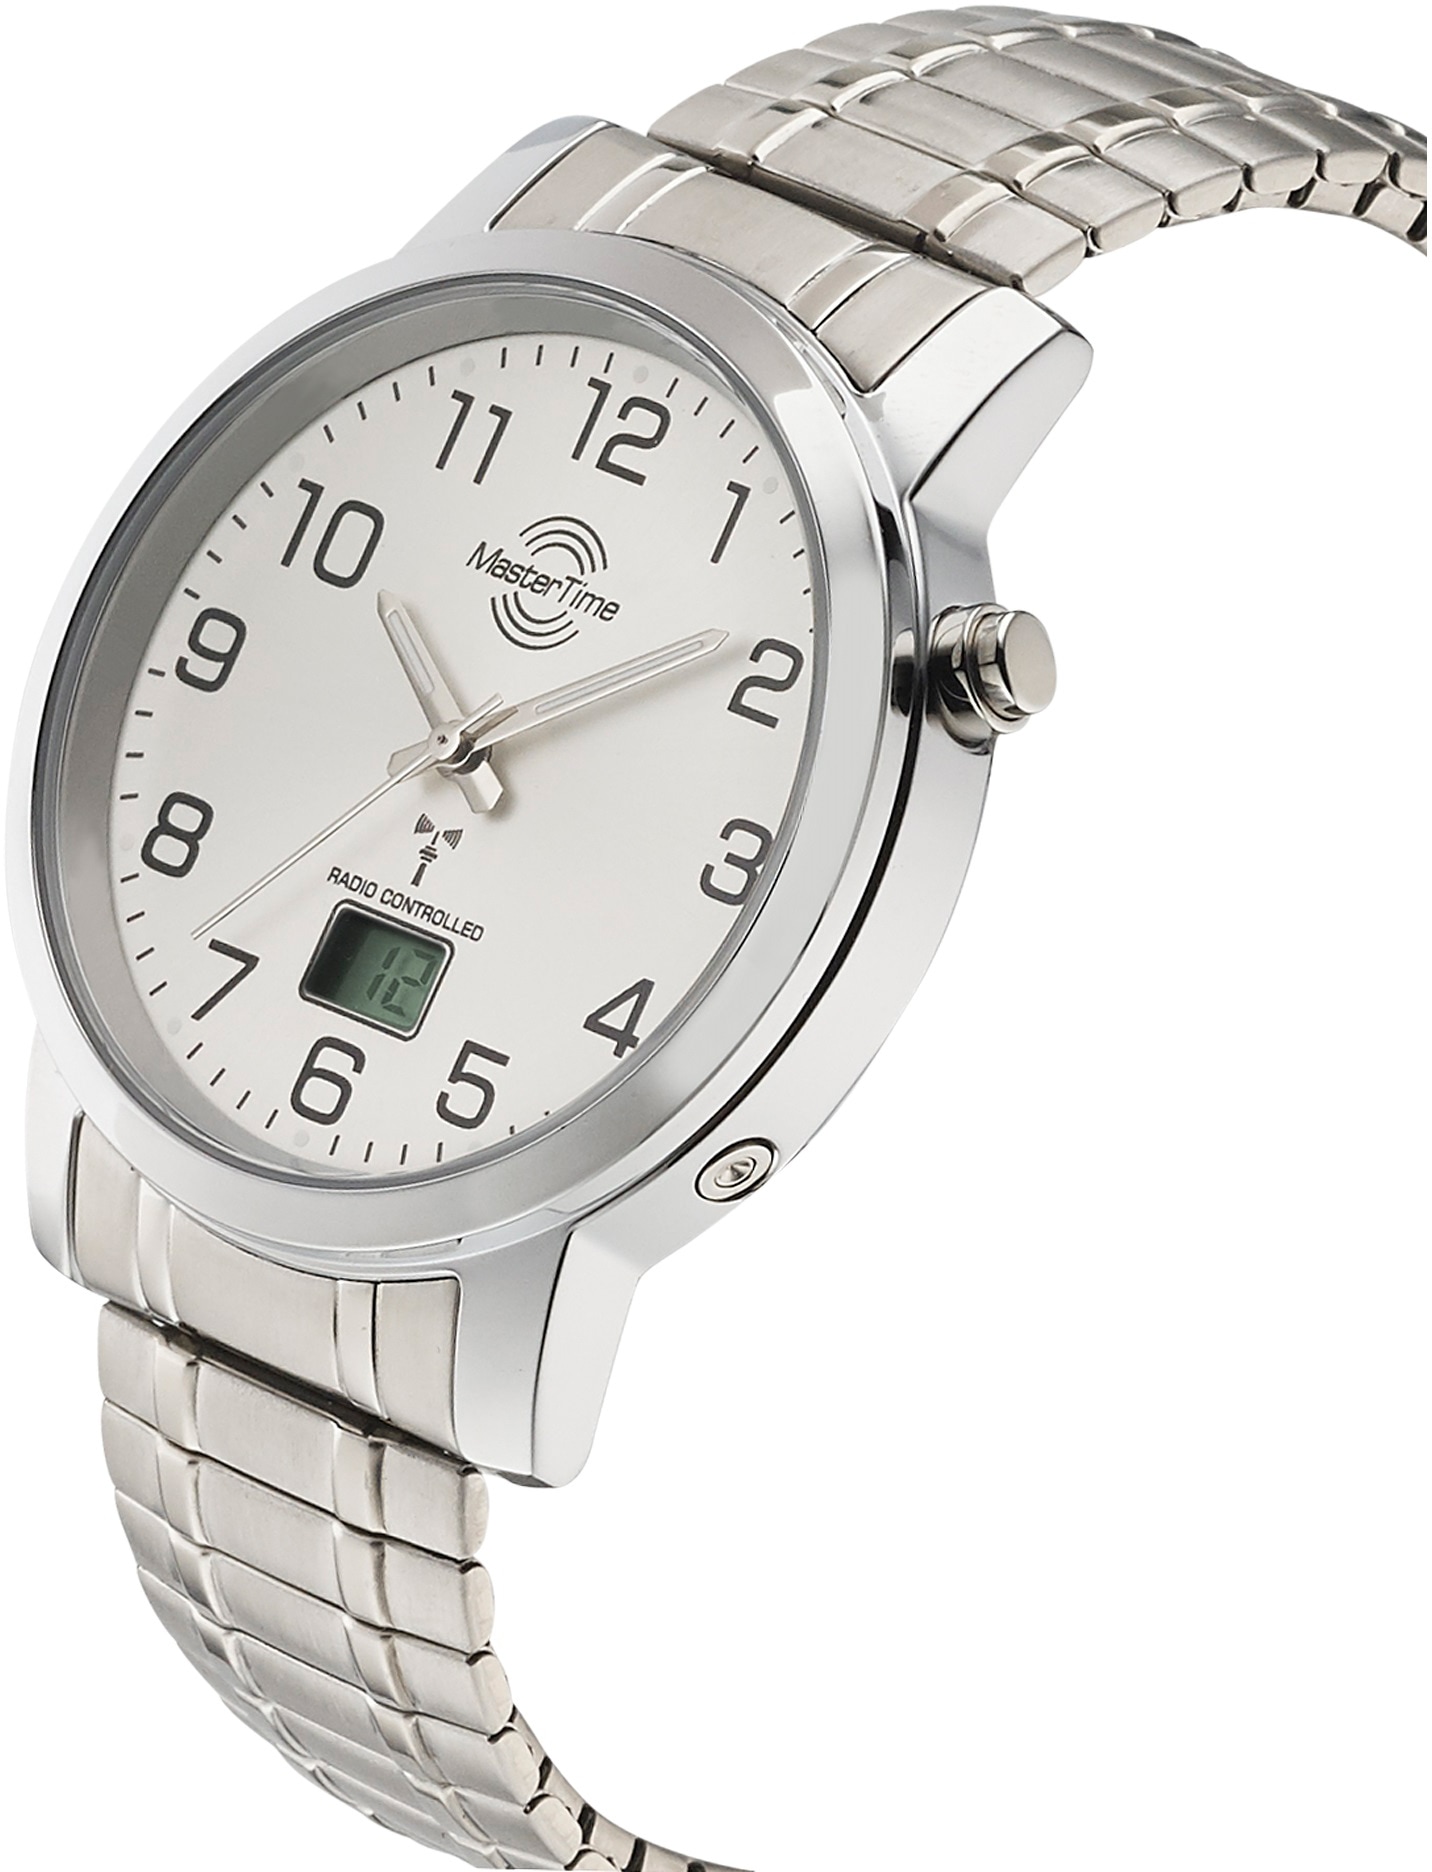 MASTER TIME Funkuhr »MTGA-10306-12M«, Armbanduhr, Quarzuhr, Herrenuhr, Datum, Langzeitbatterie